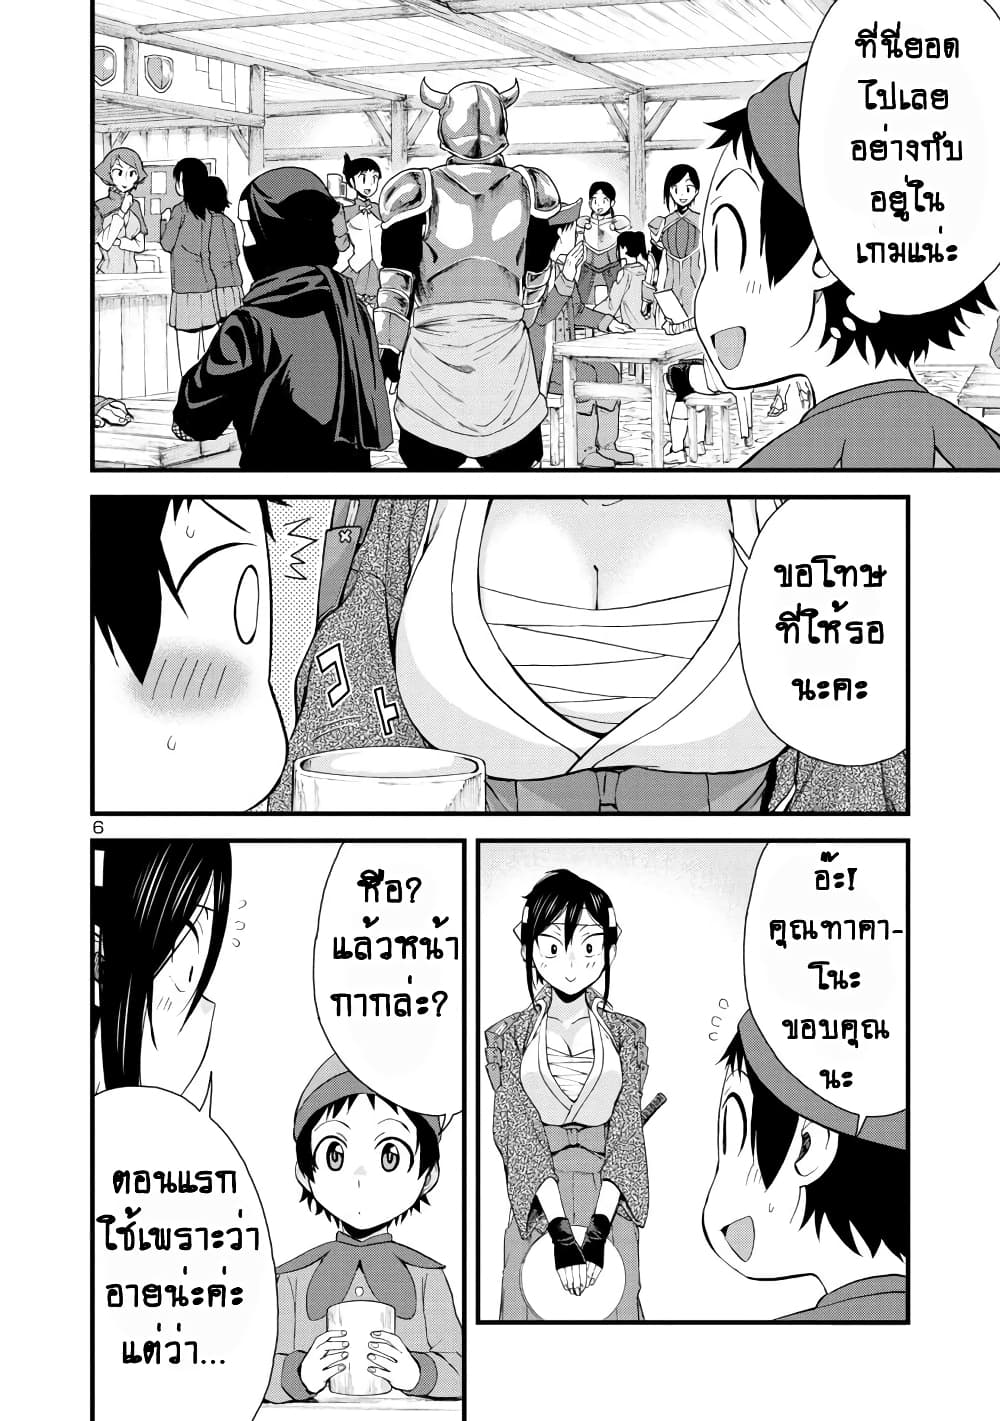 Hitomi-chan Is Shy With Strangers วันๆของน้องฮิโตมิก็เป็นแบบนี้แหล่ะ 33-33